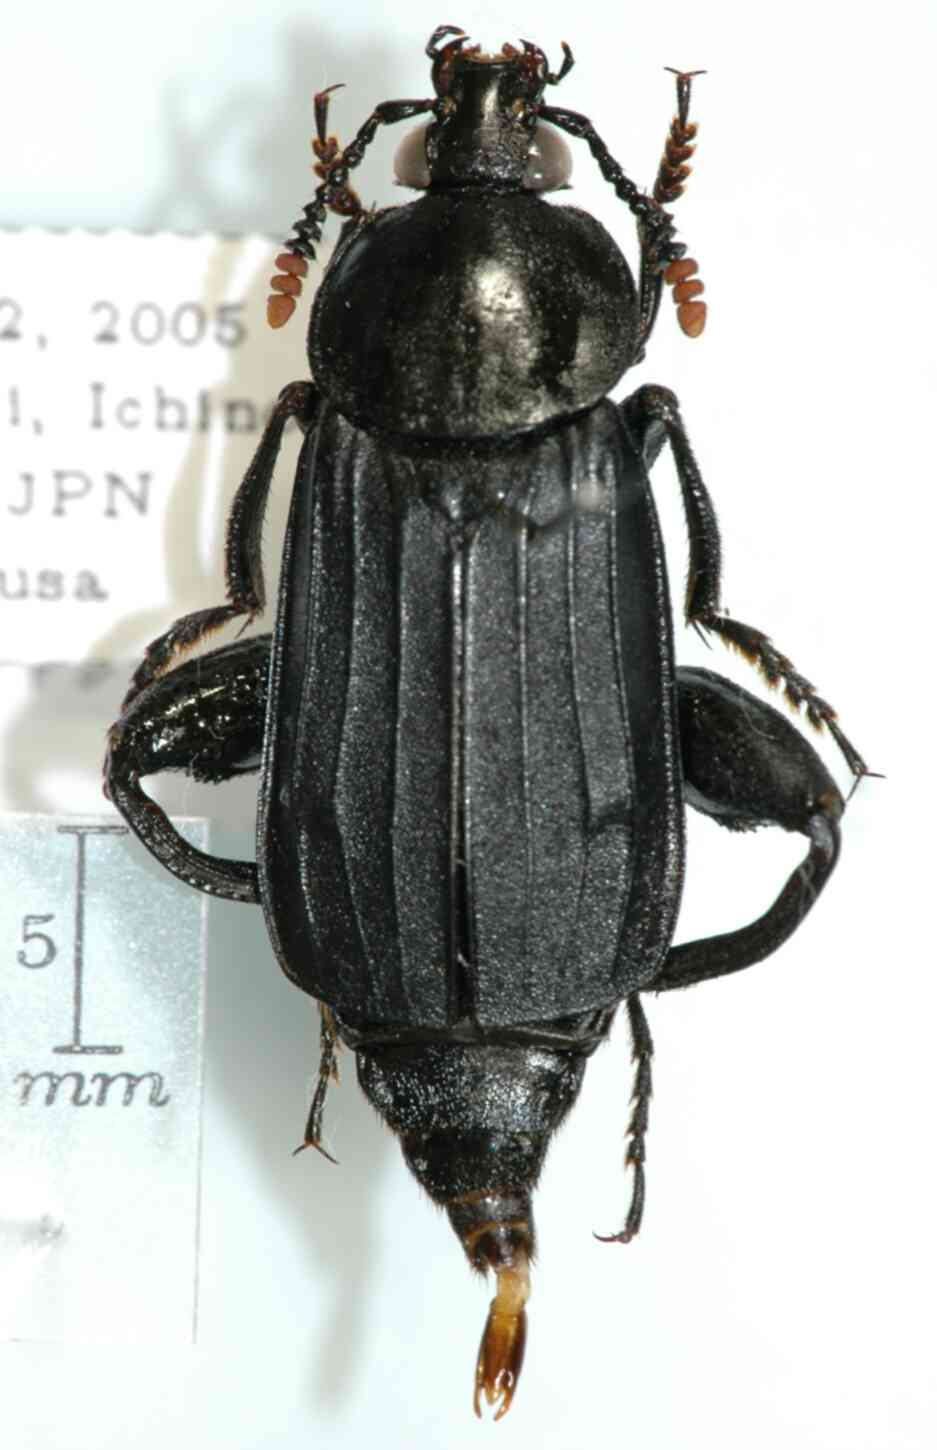 Necrodes asiaticus